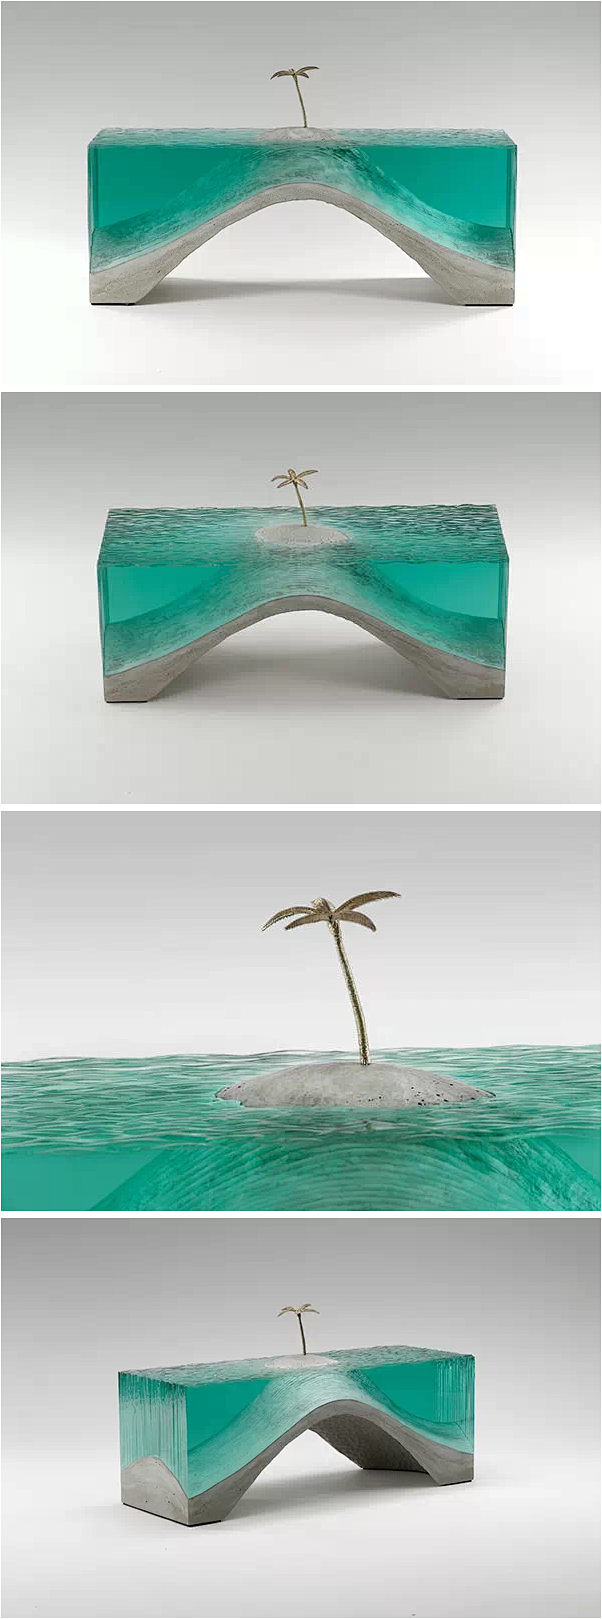 玻璃与混泥土 - 雕塑家Ben Youn...